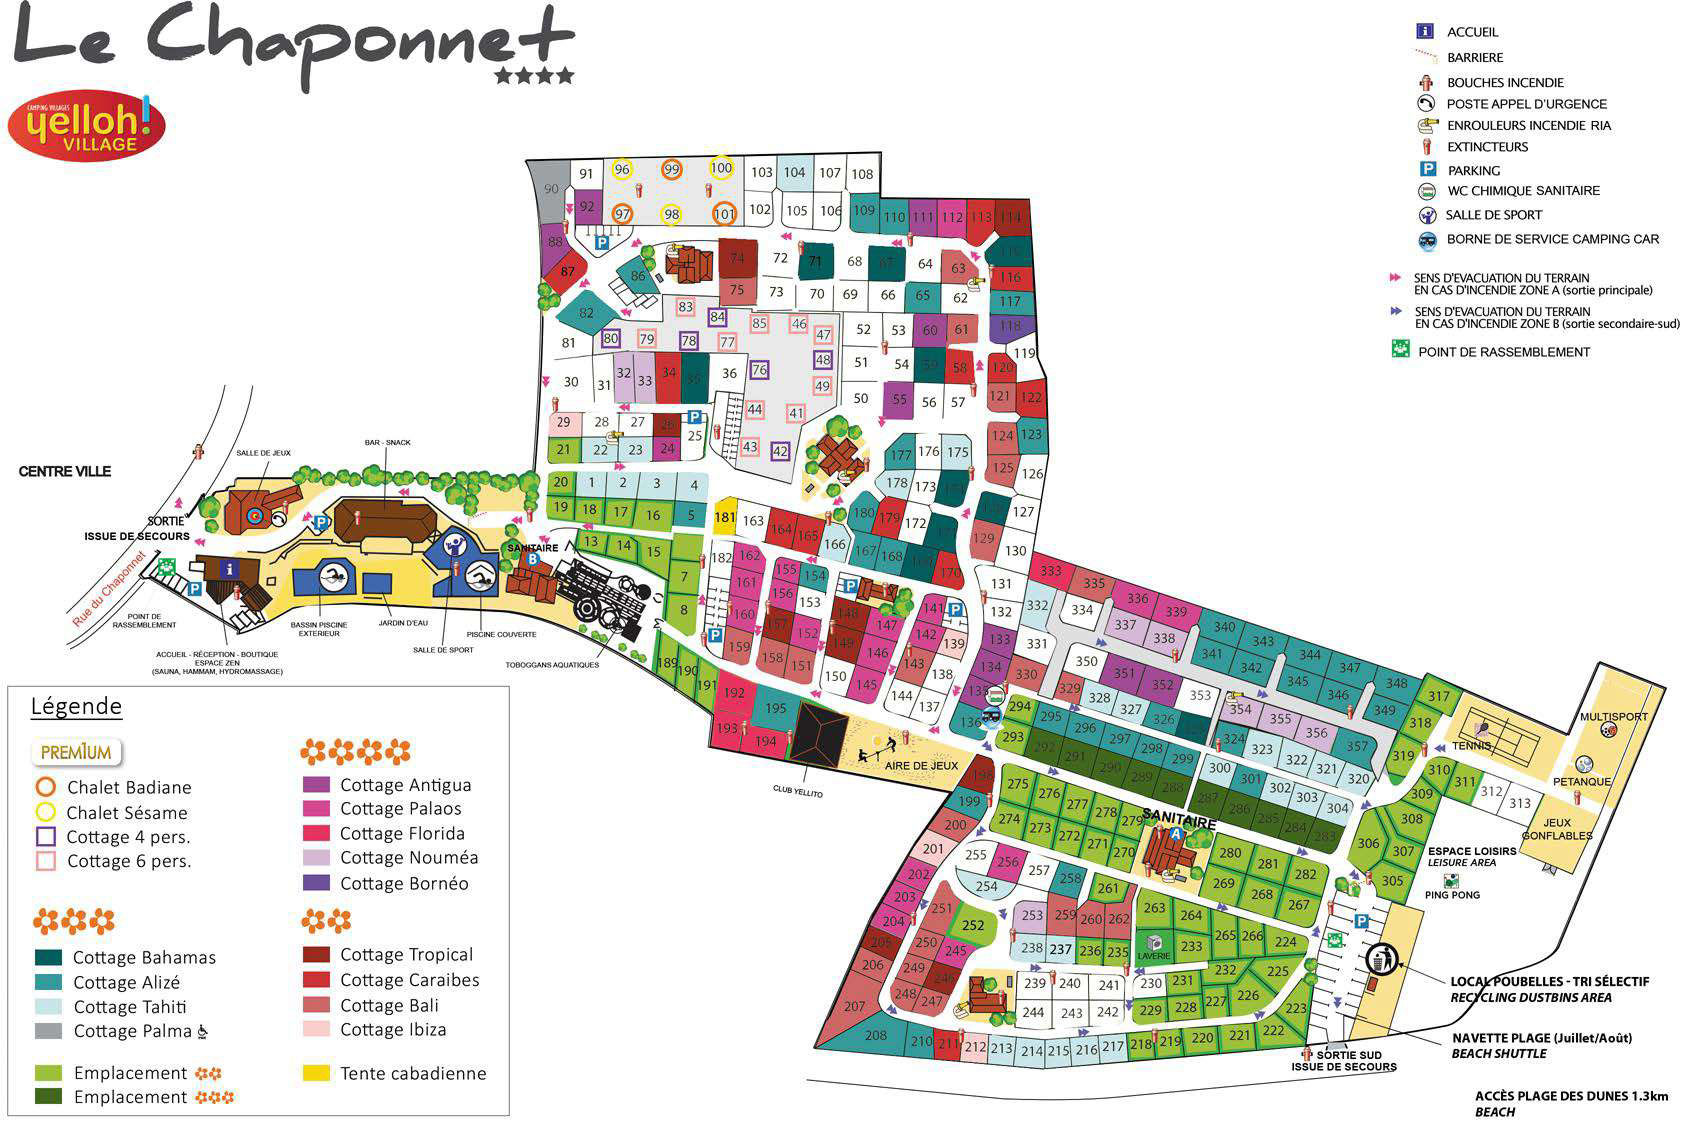 Campsite map Le Chaponnet 